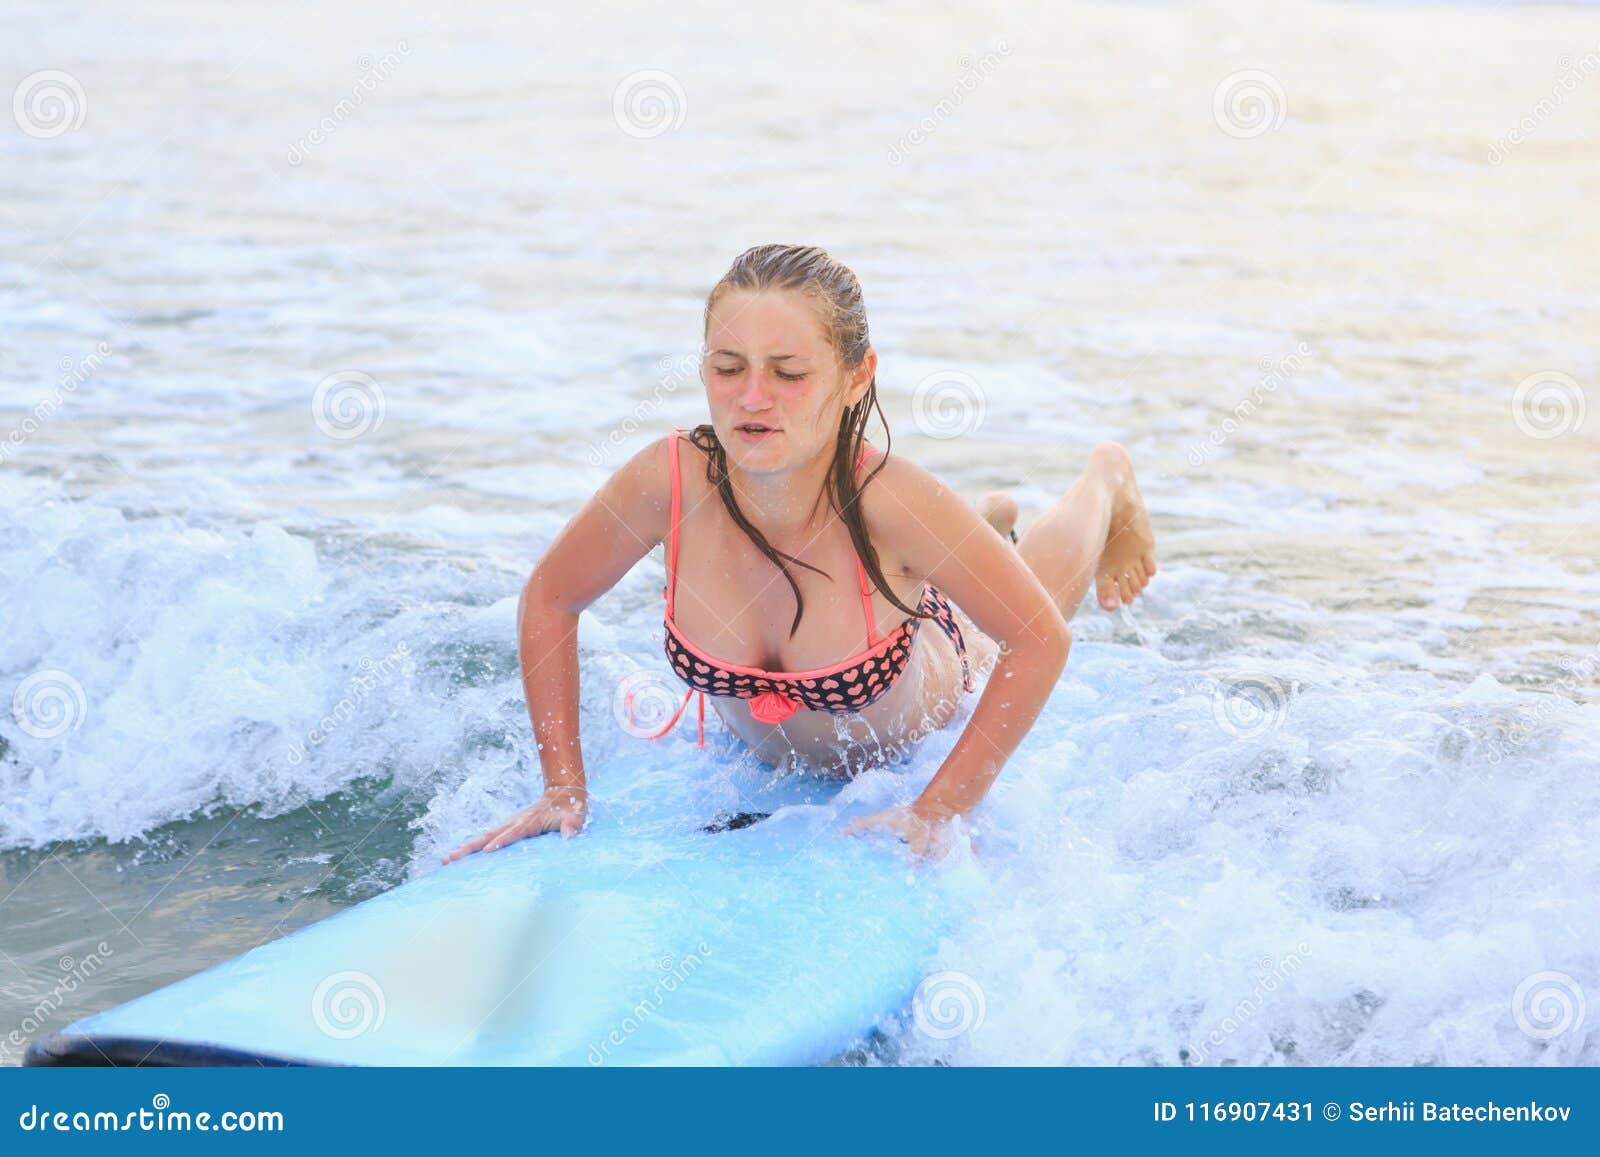 Surfer Girl Models Wet Kloe Kane